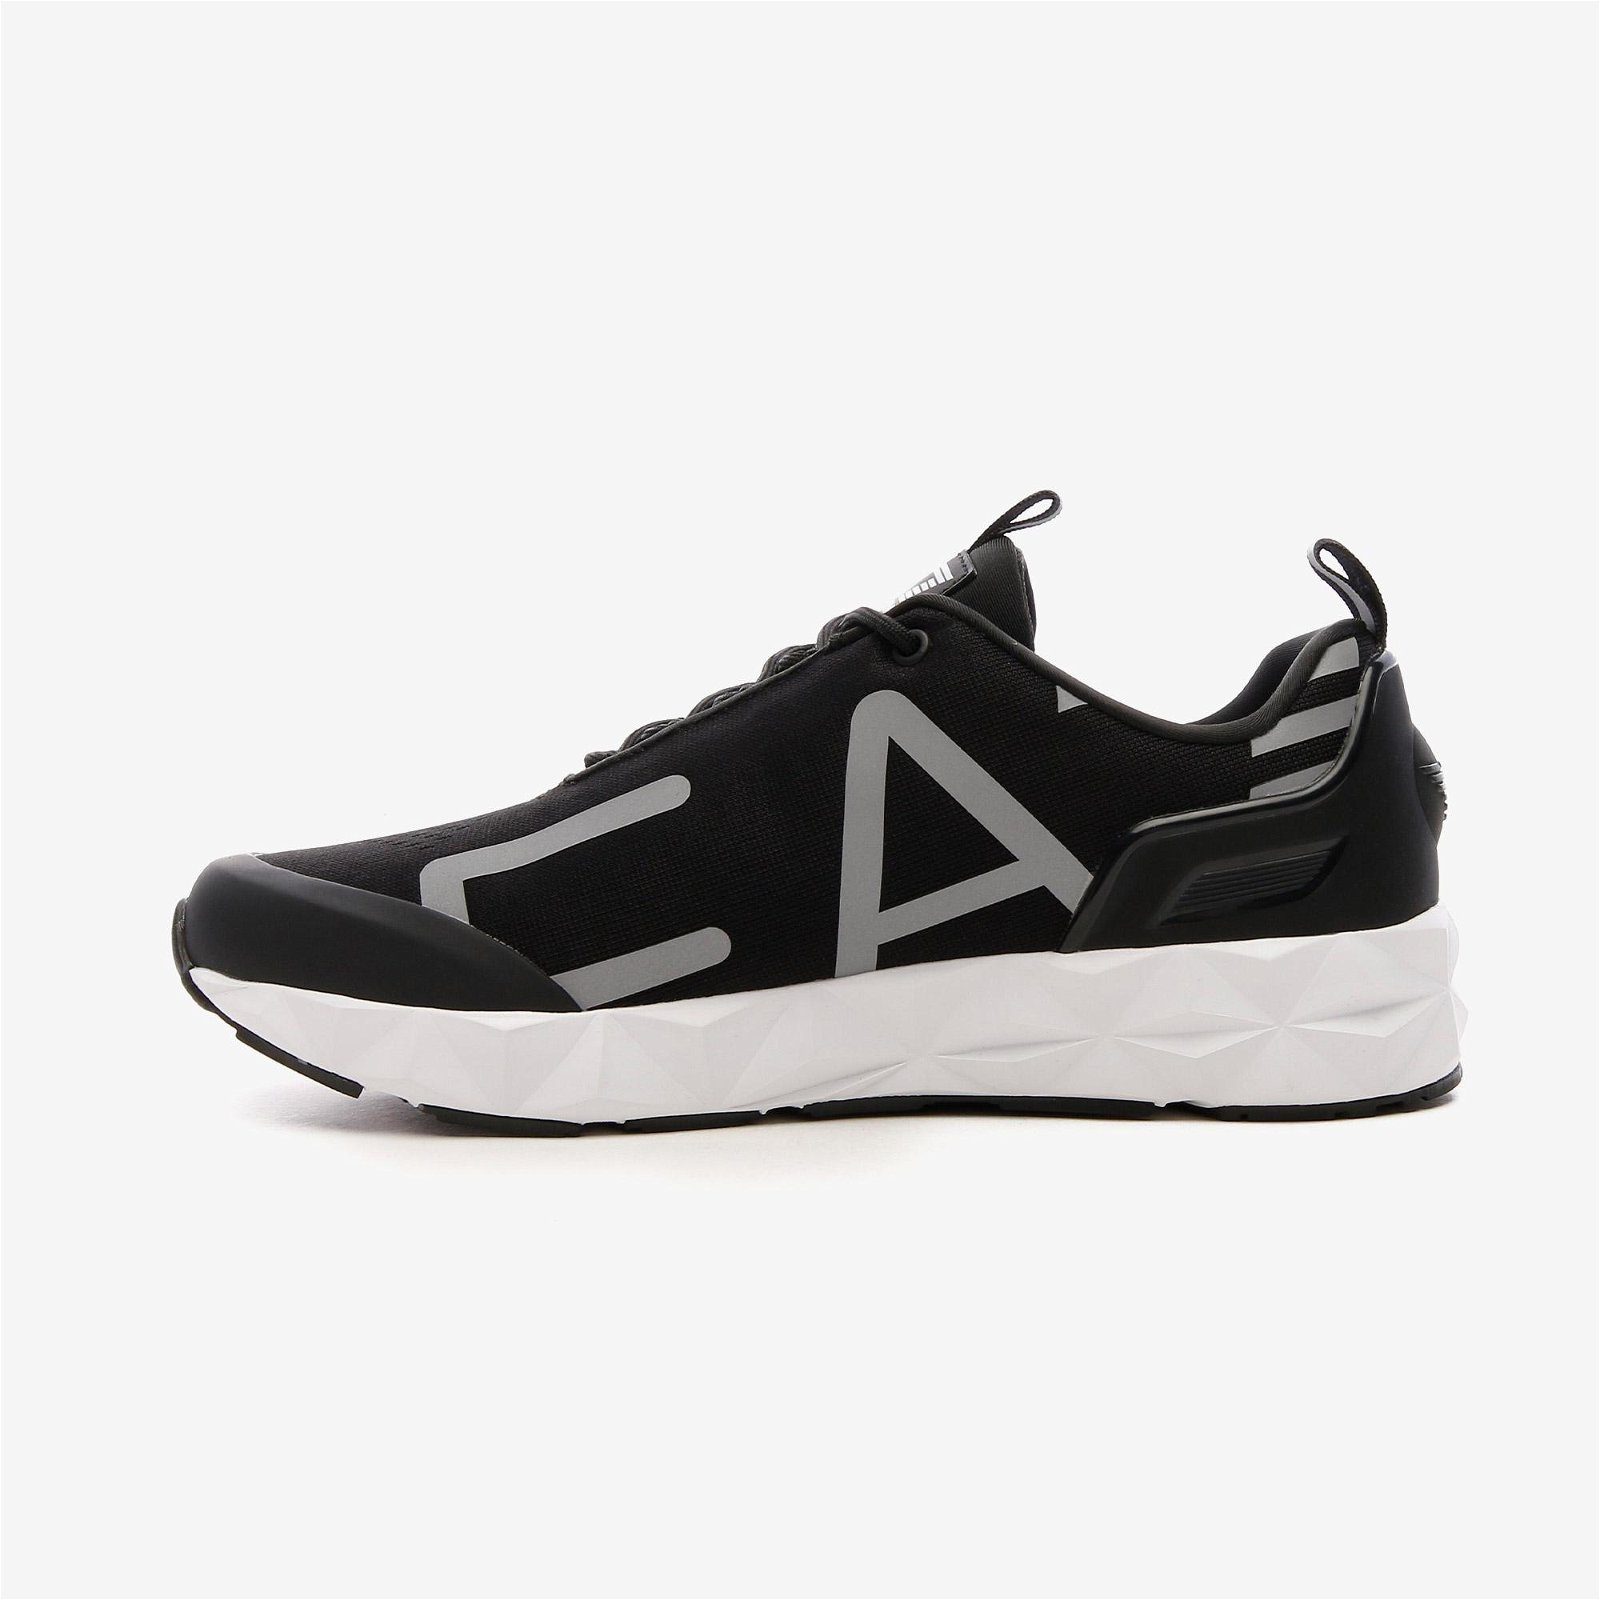 EA7 Emporio Armani Logolu Erkek Siyah/Gümüş Spor Ayakkabı